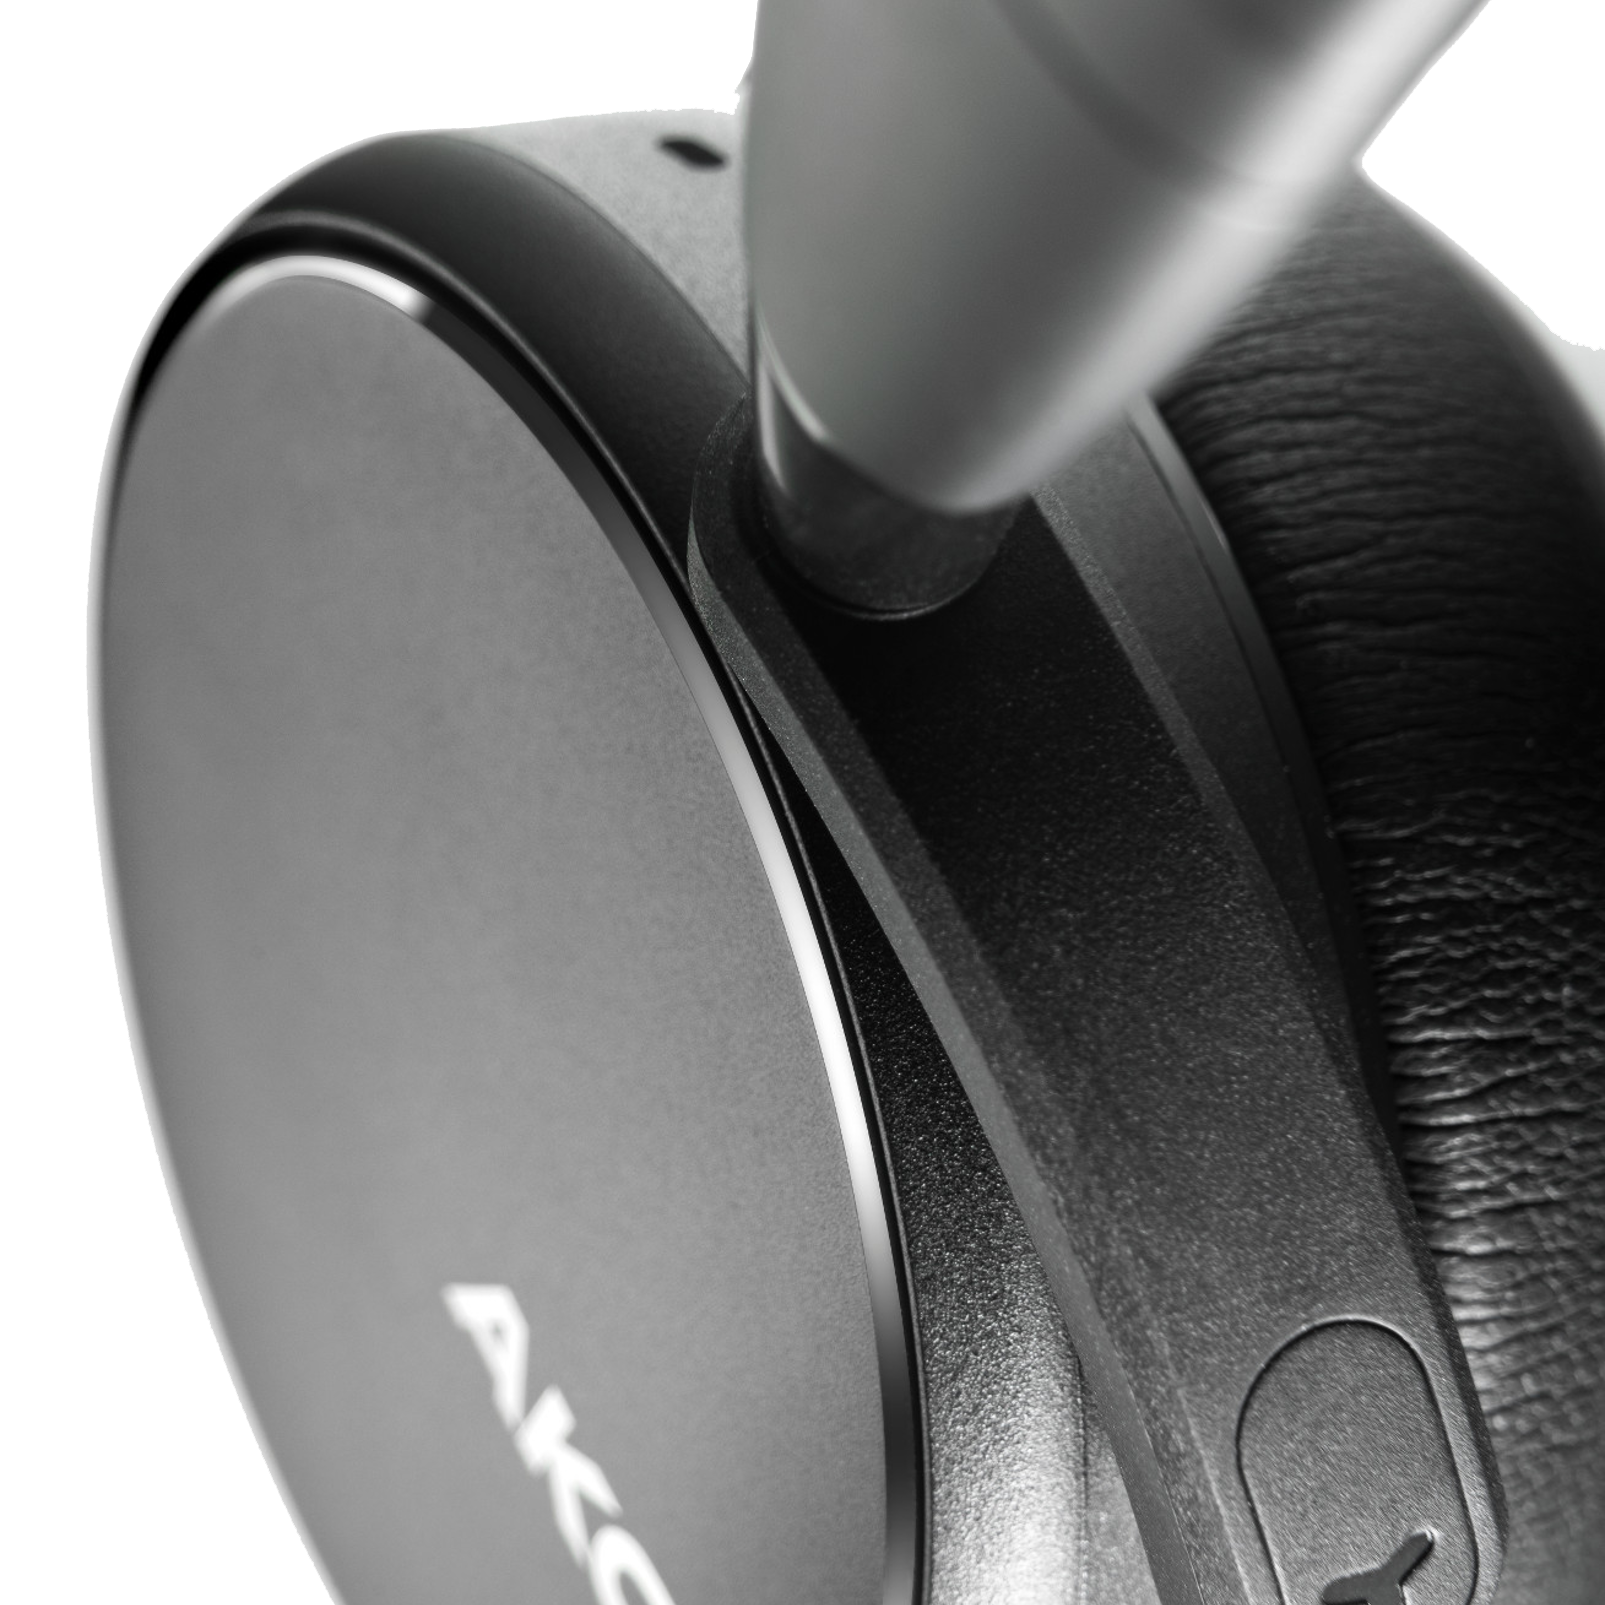 AKG Y400 WIRELESS - Black - Wireless mini on-ear headphones - Detailshot 1